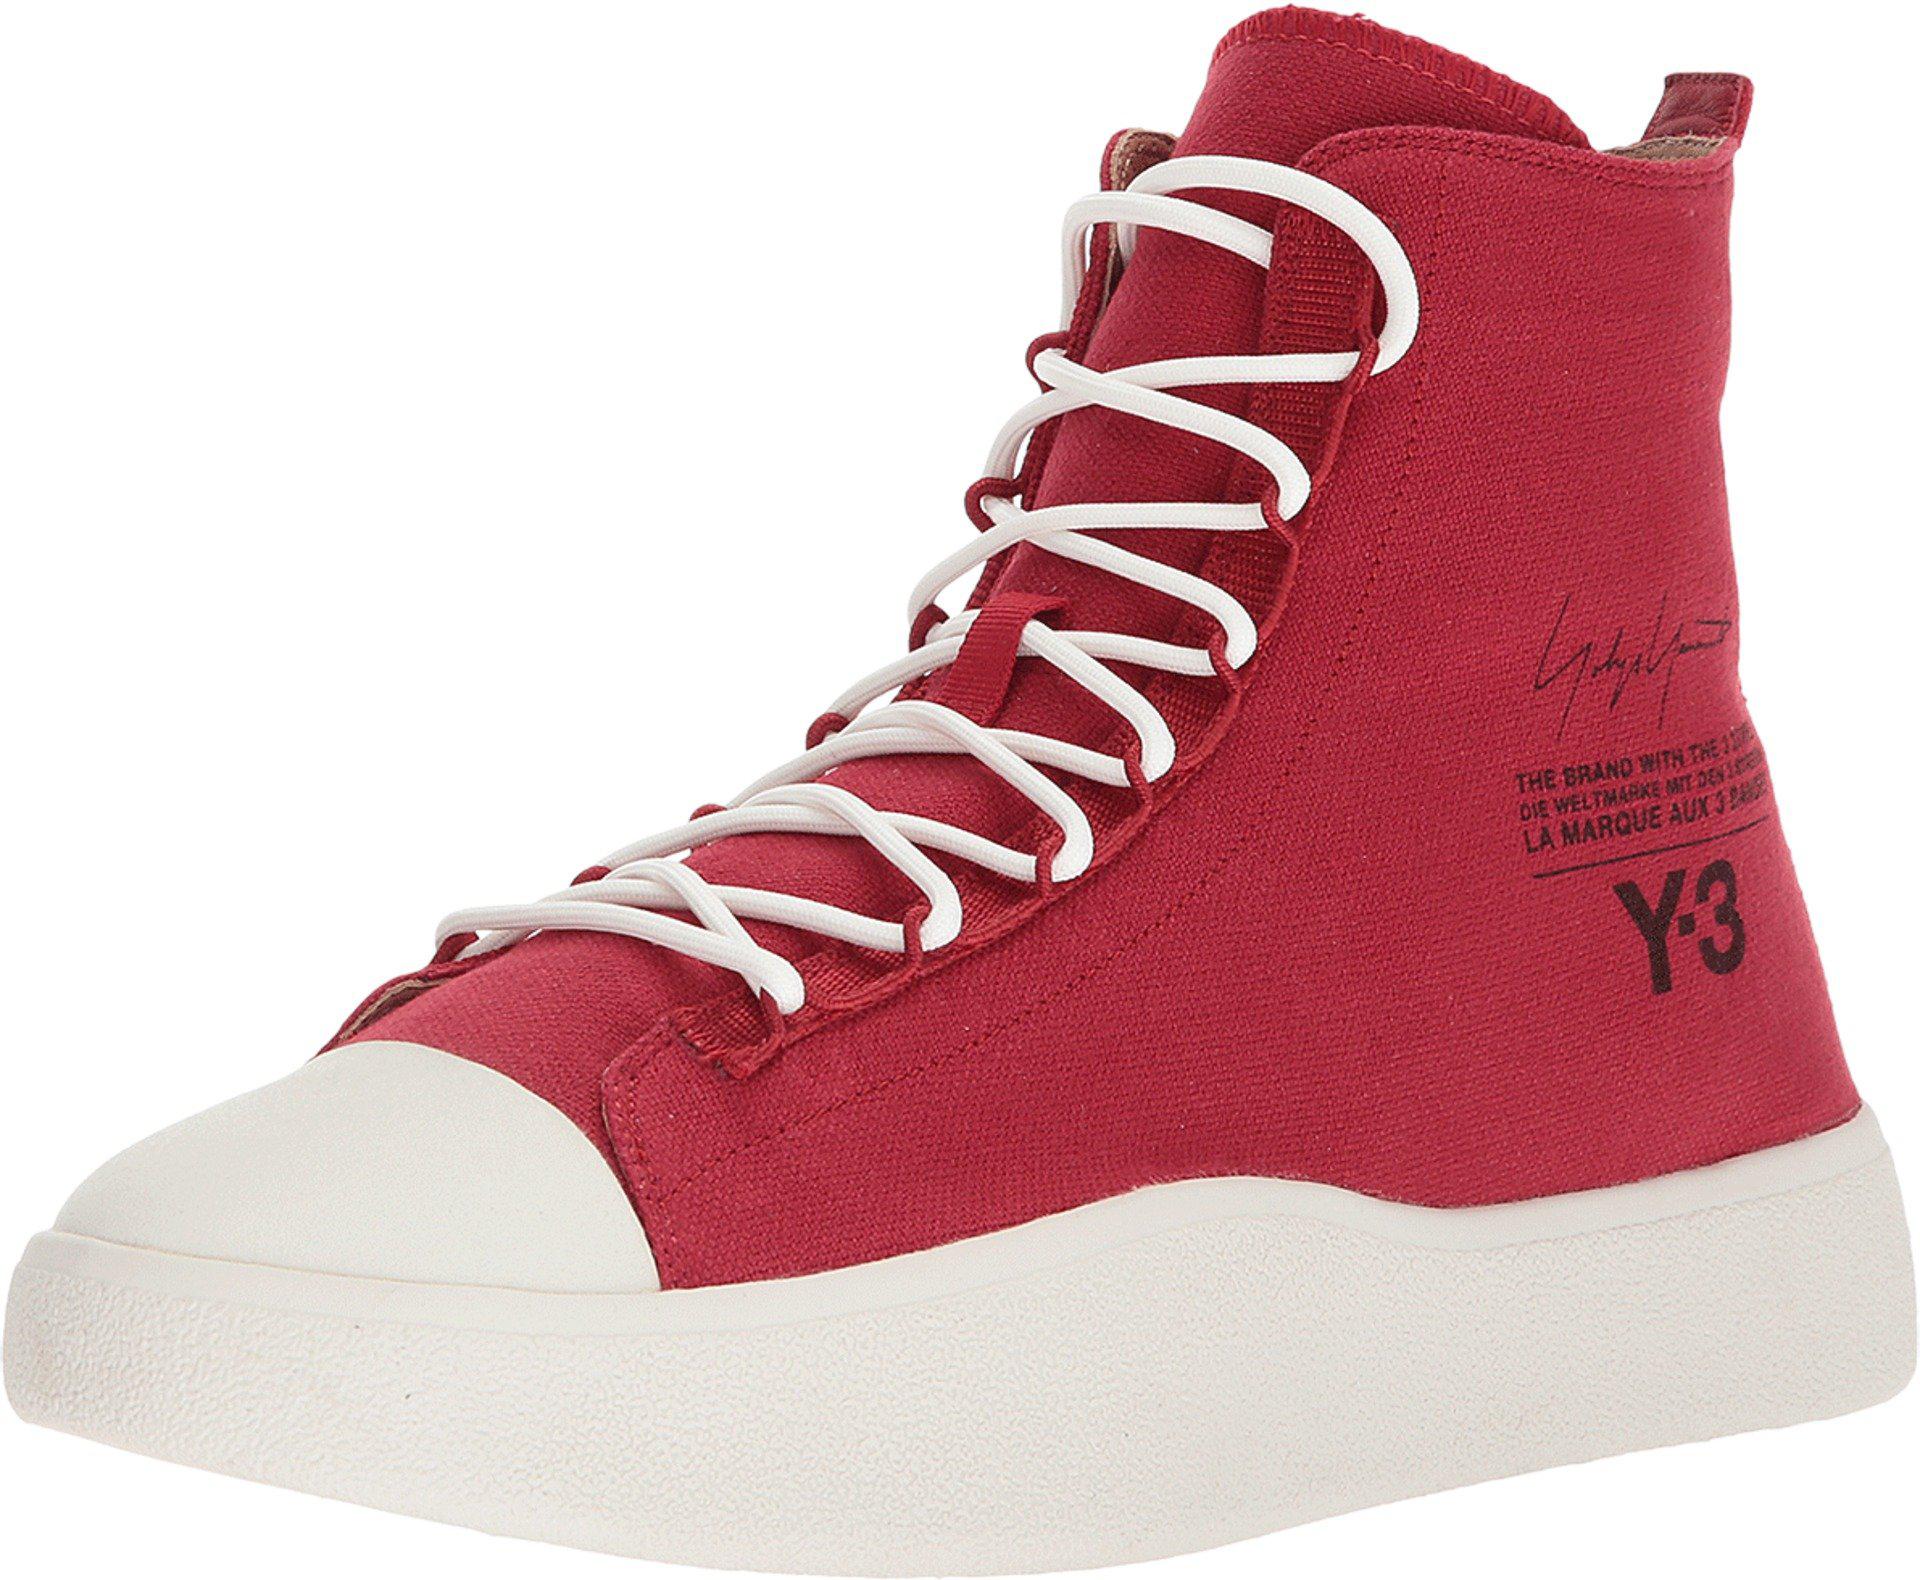 y3 red sneakers